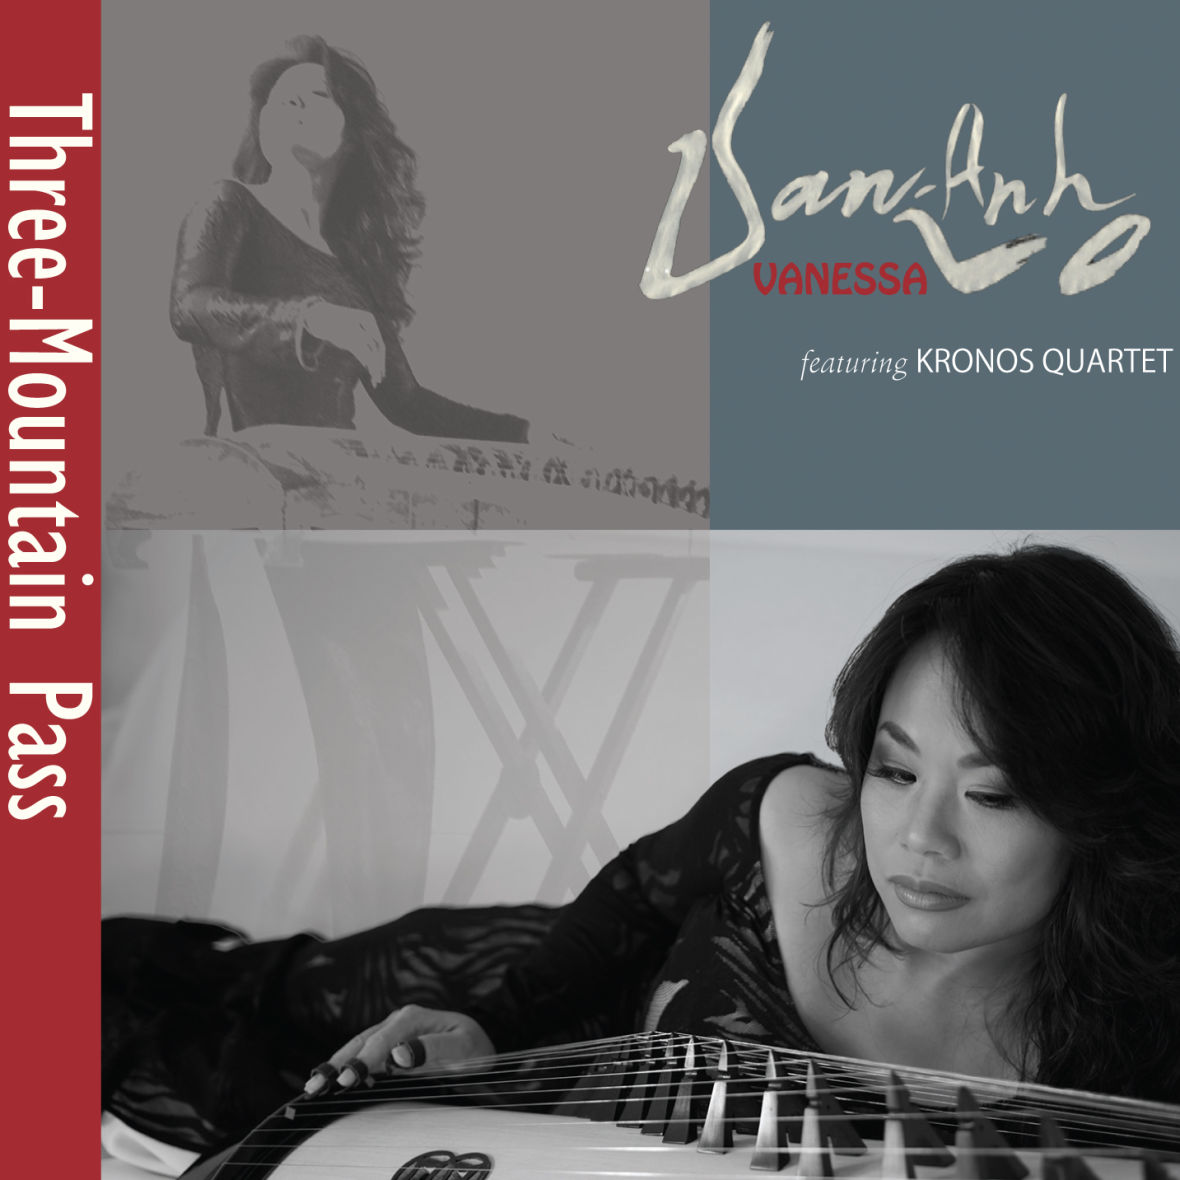 Van-Anh Vo Album with Kronos Quartet 